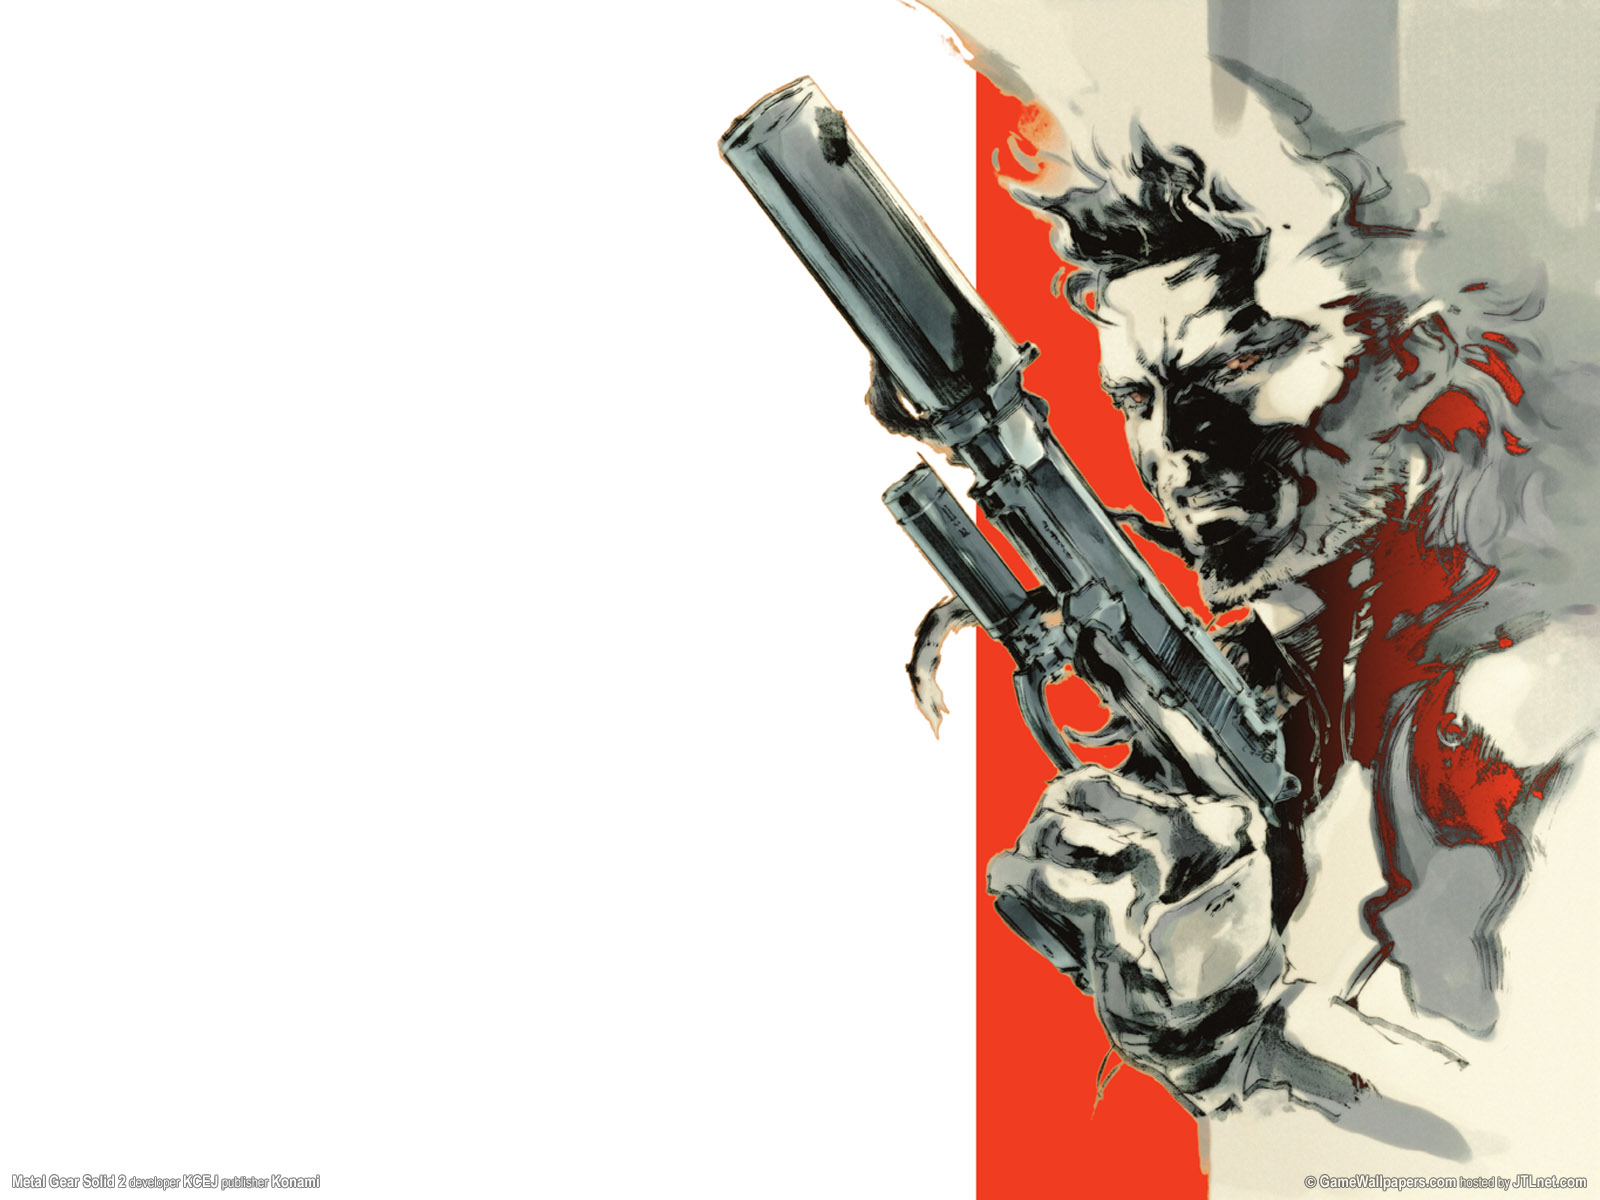 46 Metal Gear Solid 5 Wallpaper Wallpapersafari